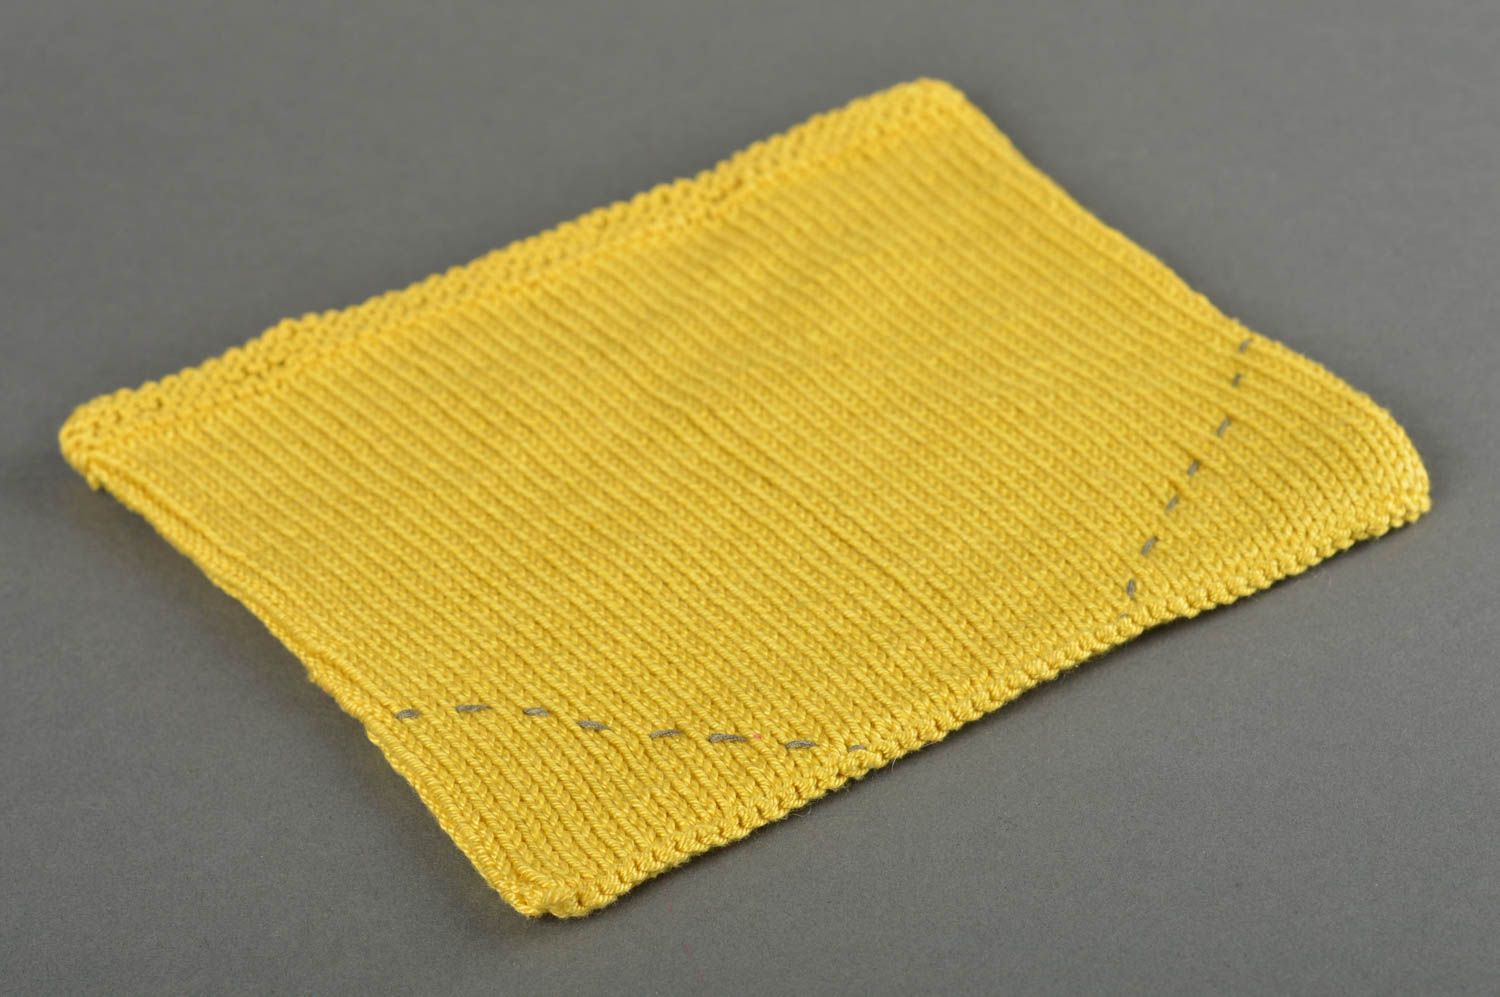 Bonnet chat crochet fait main Chapeau tricot jaune design Vêtement enfant photo 4